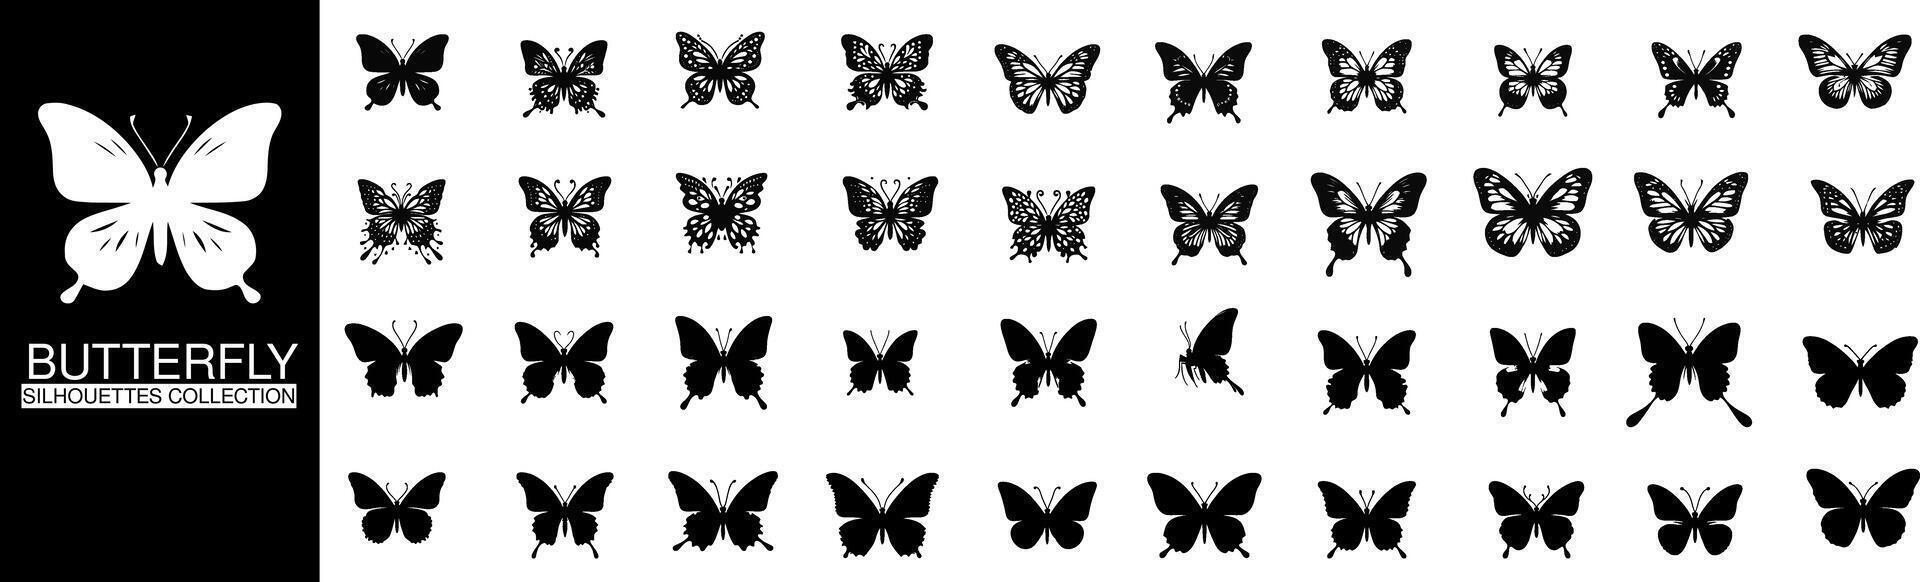 Schmetterling Silhouette Sammlung, präsentieren das zart Schönheit von verschiedene Spezies im minimalistisch Designs vektor